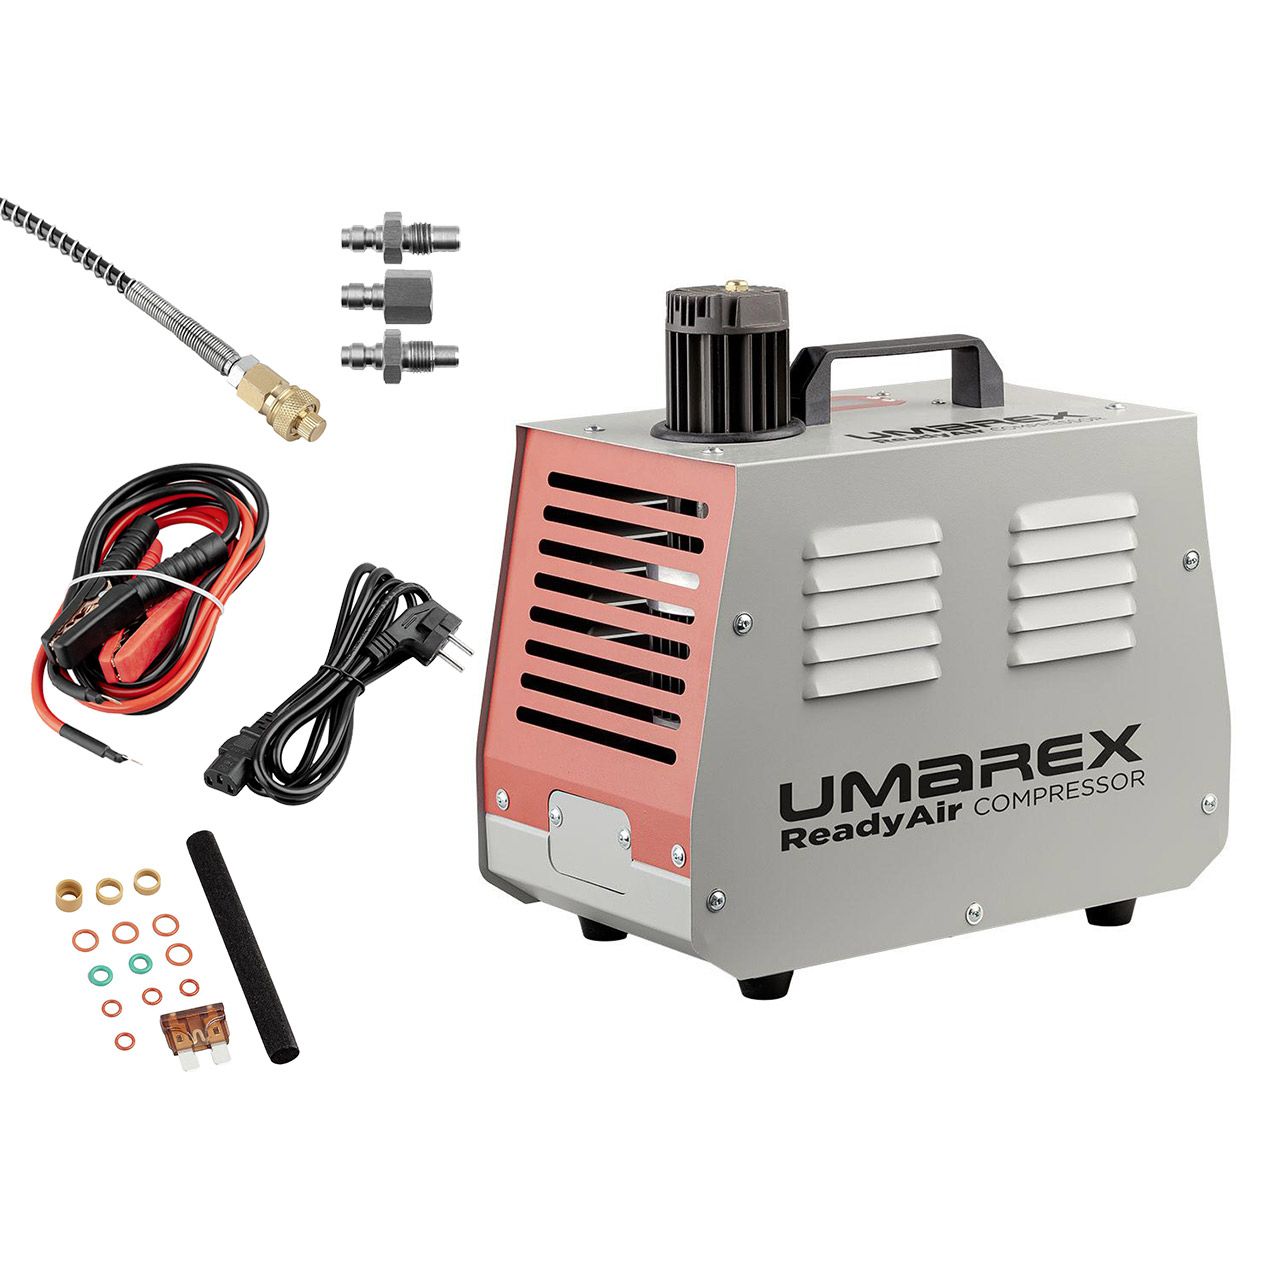 PCP Pressluft Kompressor Umarex ReadyAir Compressor bis 300 Bar inklusive ZubehĂ¶r